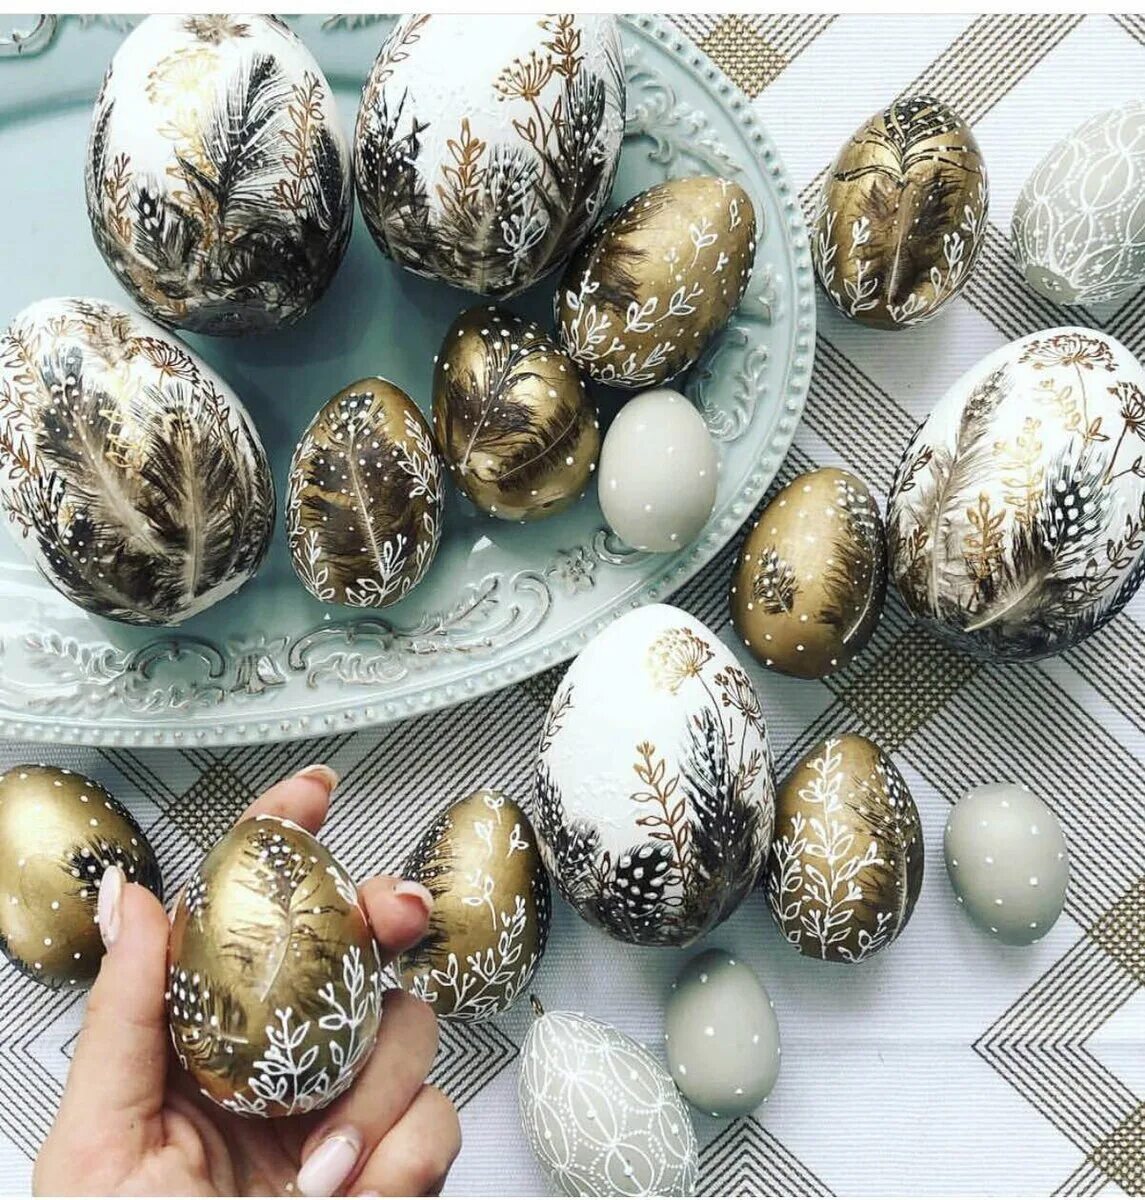 Красивые яйца на пасху своими руками